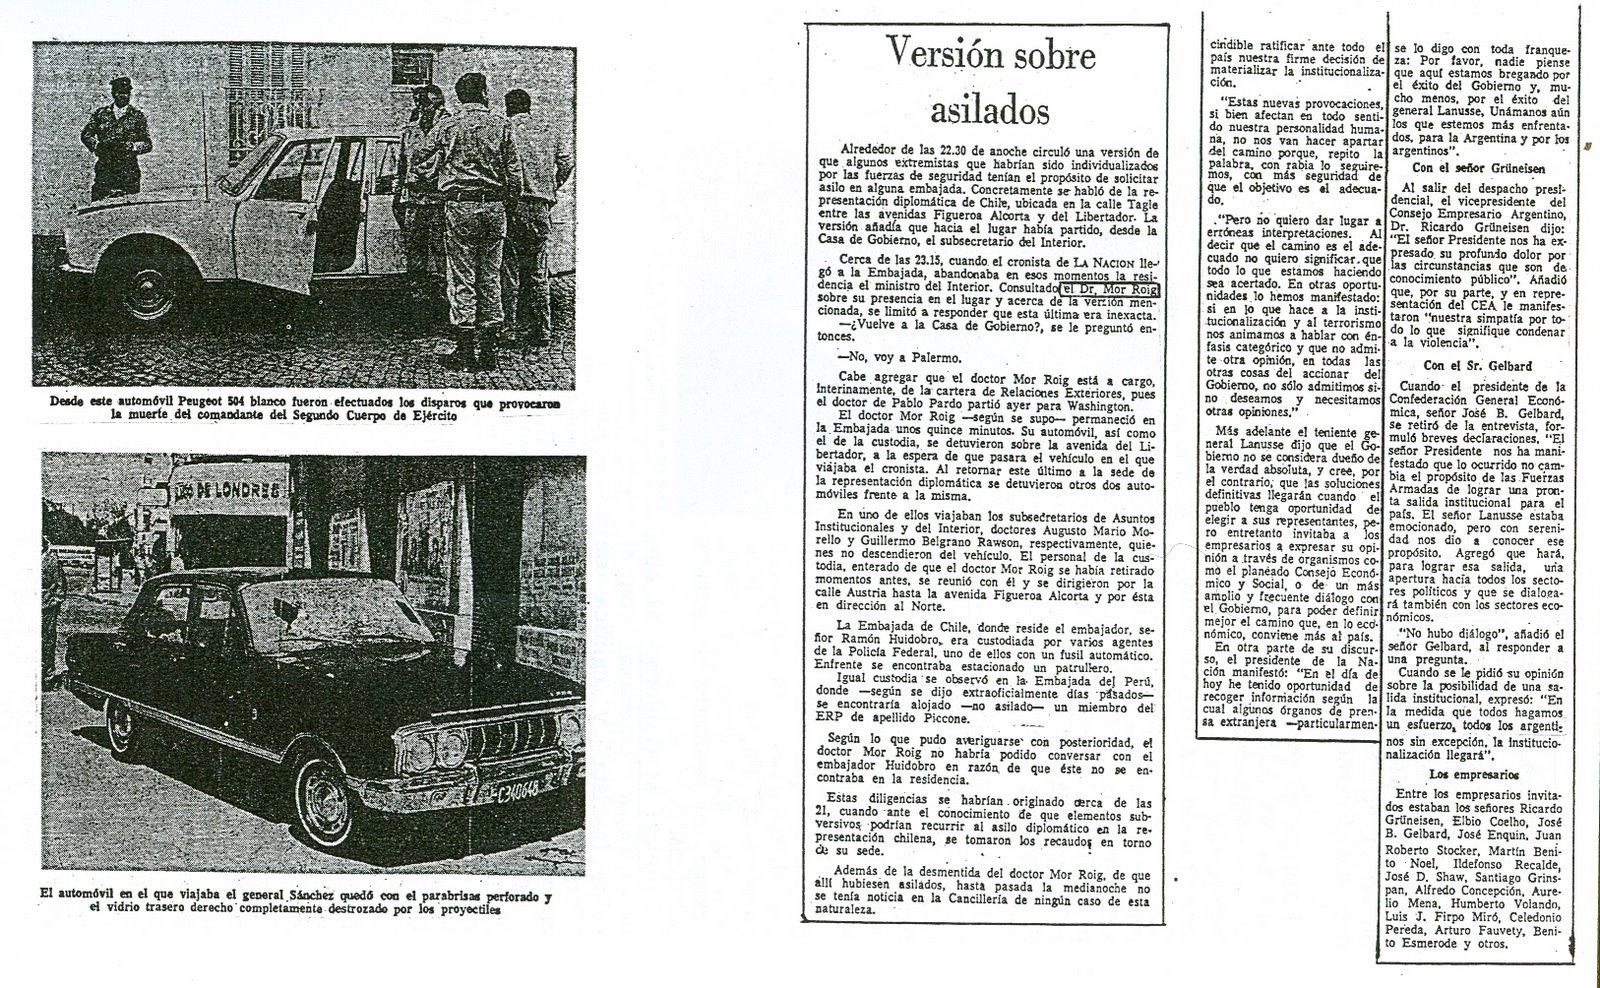 [1972-11-04+La+Nacion+-+Asesinatos+de+gral+Sanchez+y+Dr+Oberdan+Sallustro+23.jpg]